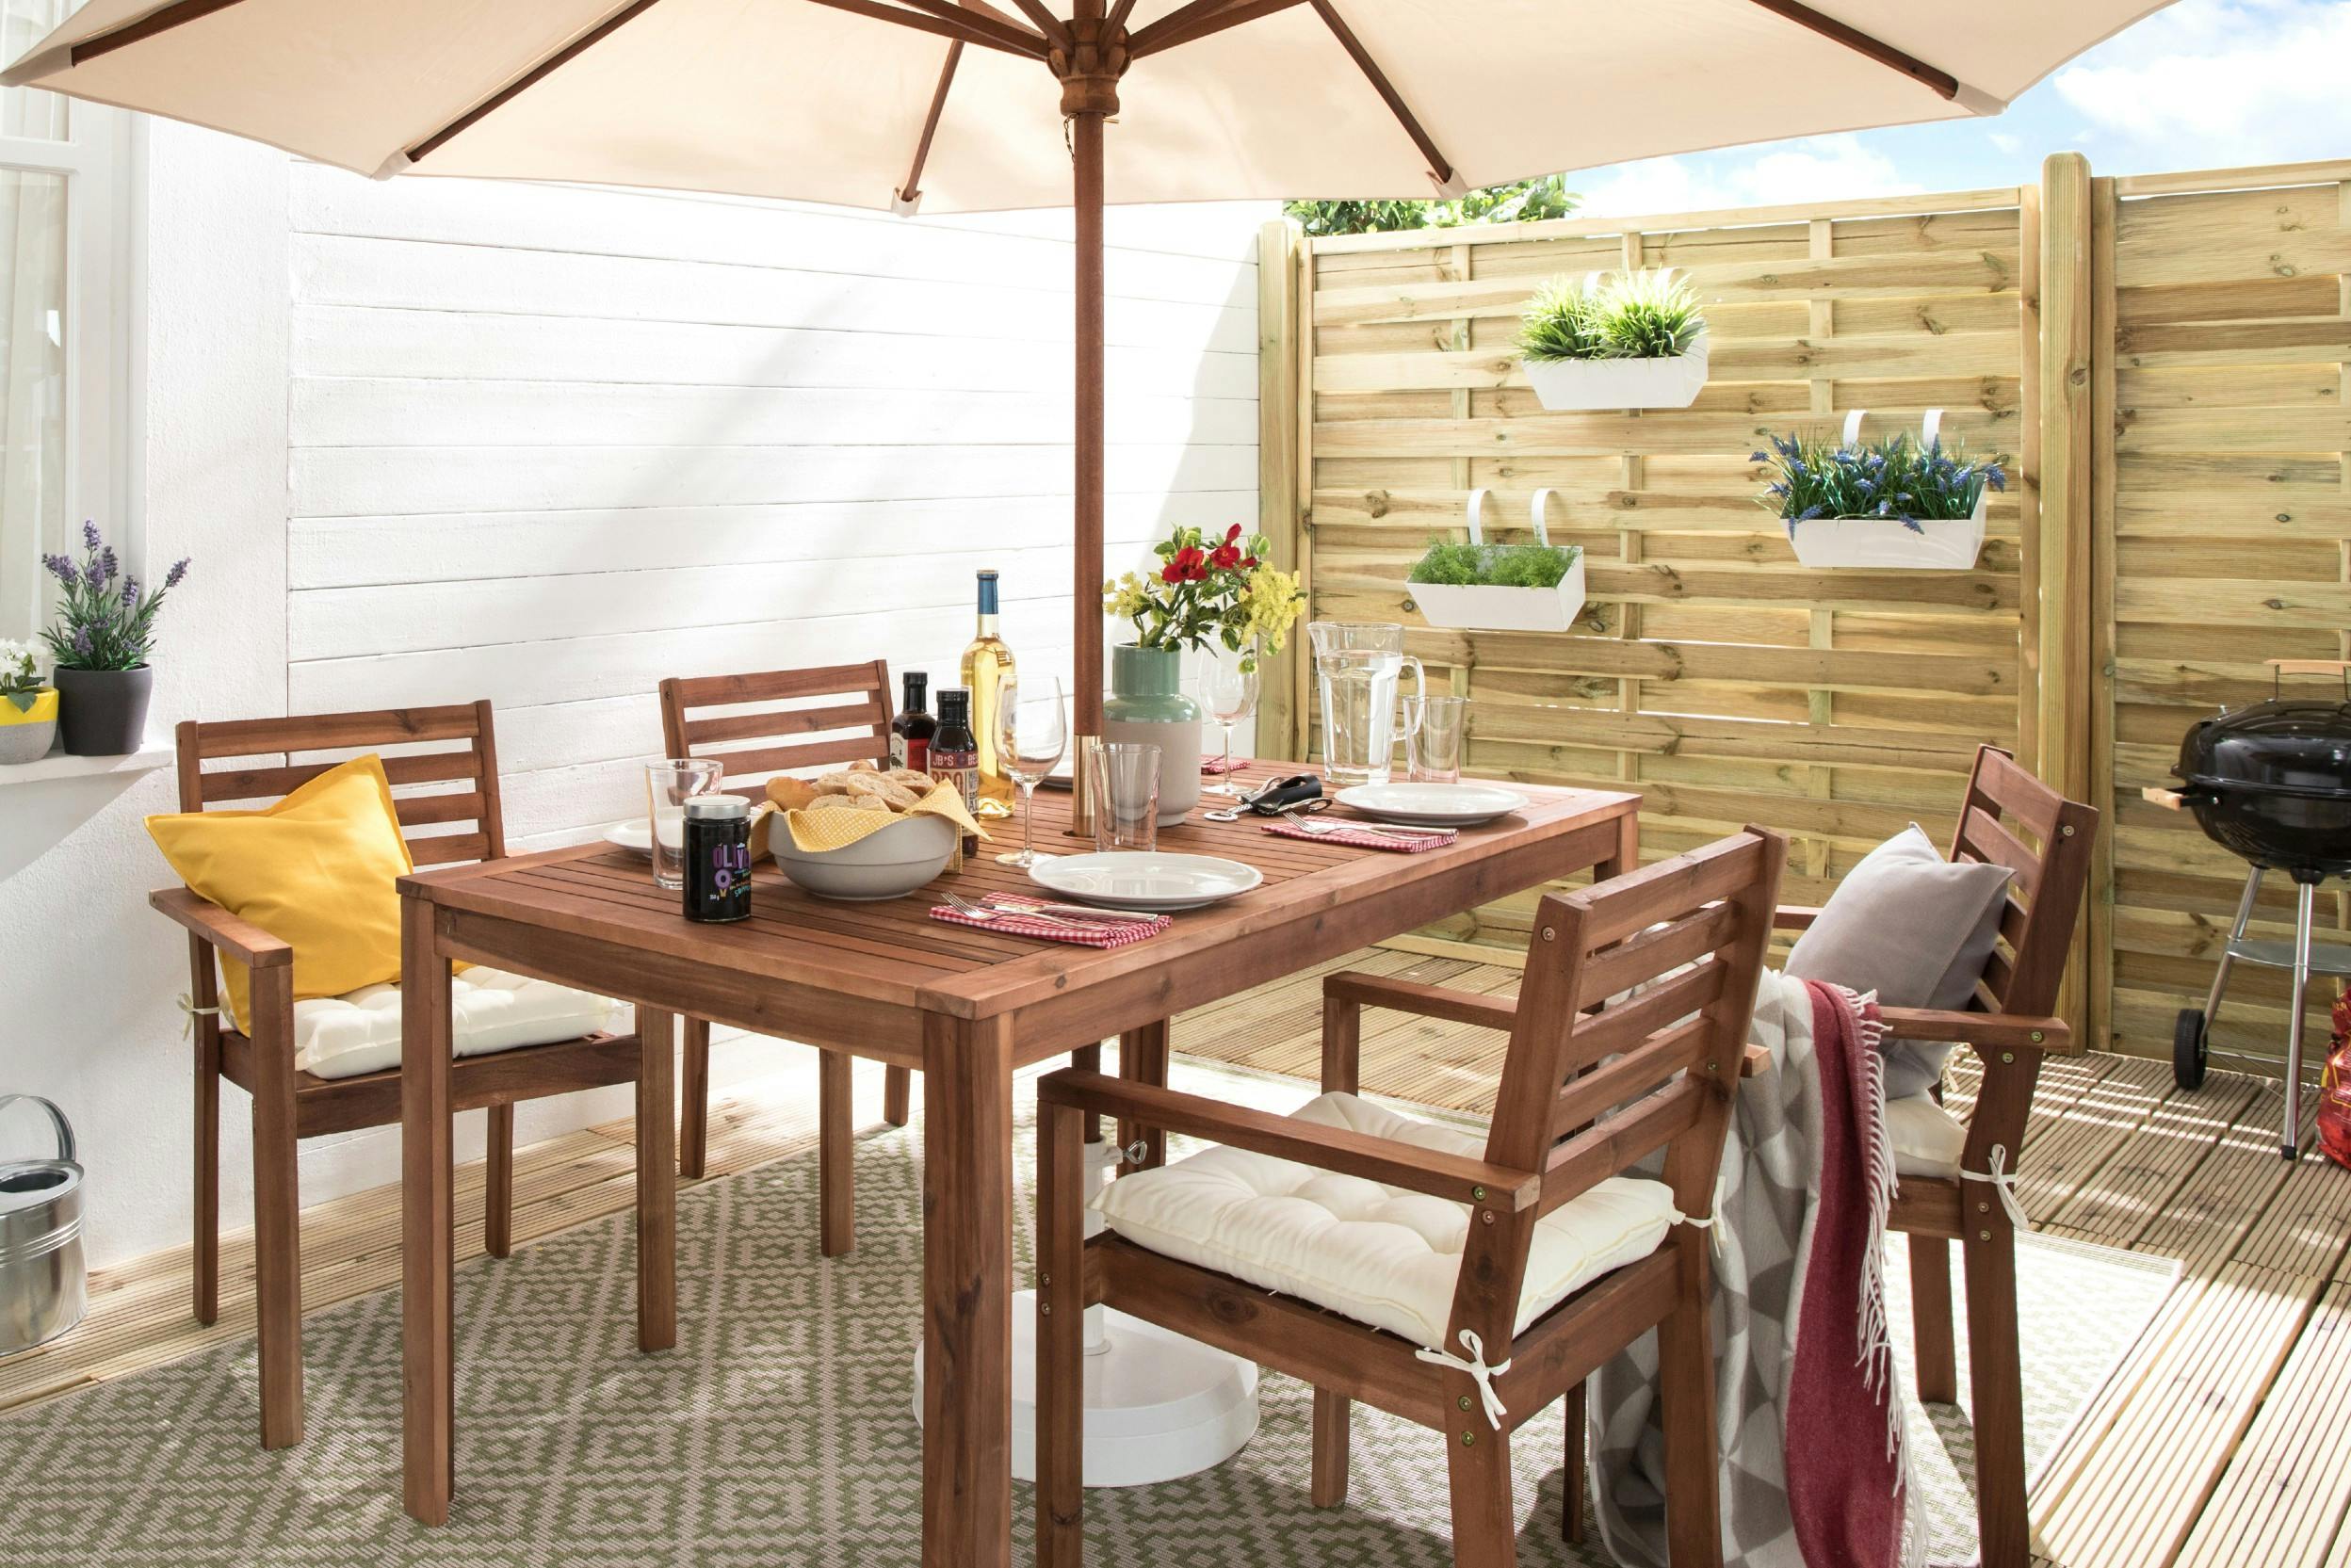 Terrasse mit Sitzgruppe aus Holz, aufgespanntem Sonnenschirm und Kugelgrill